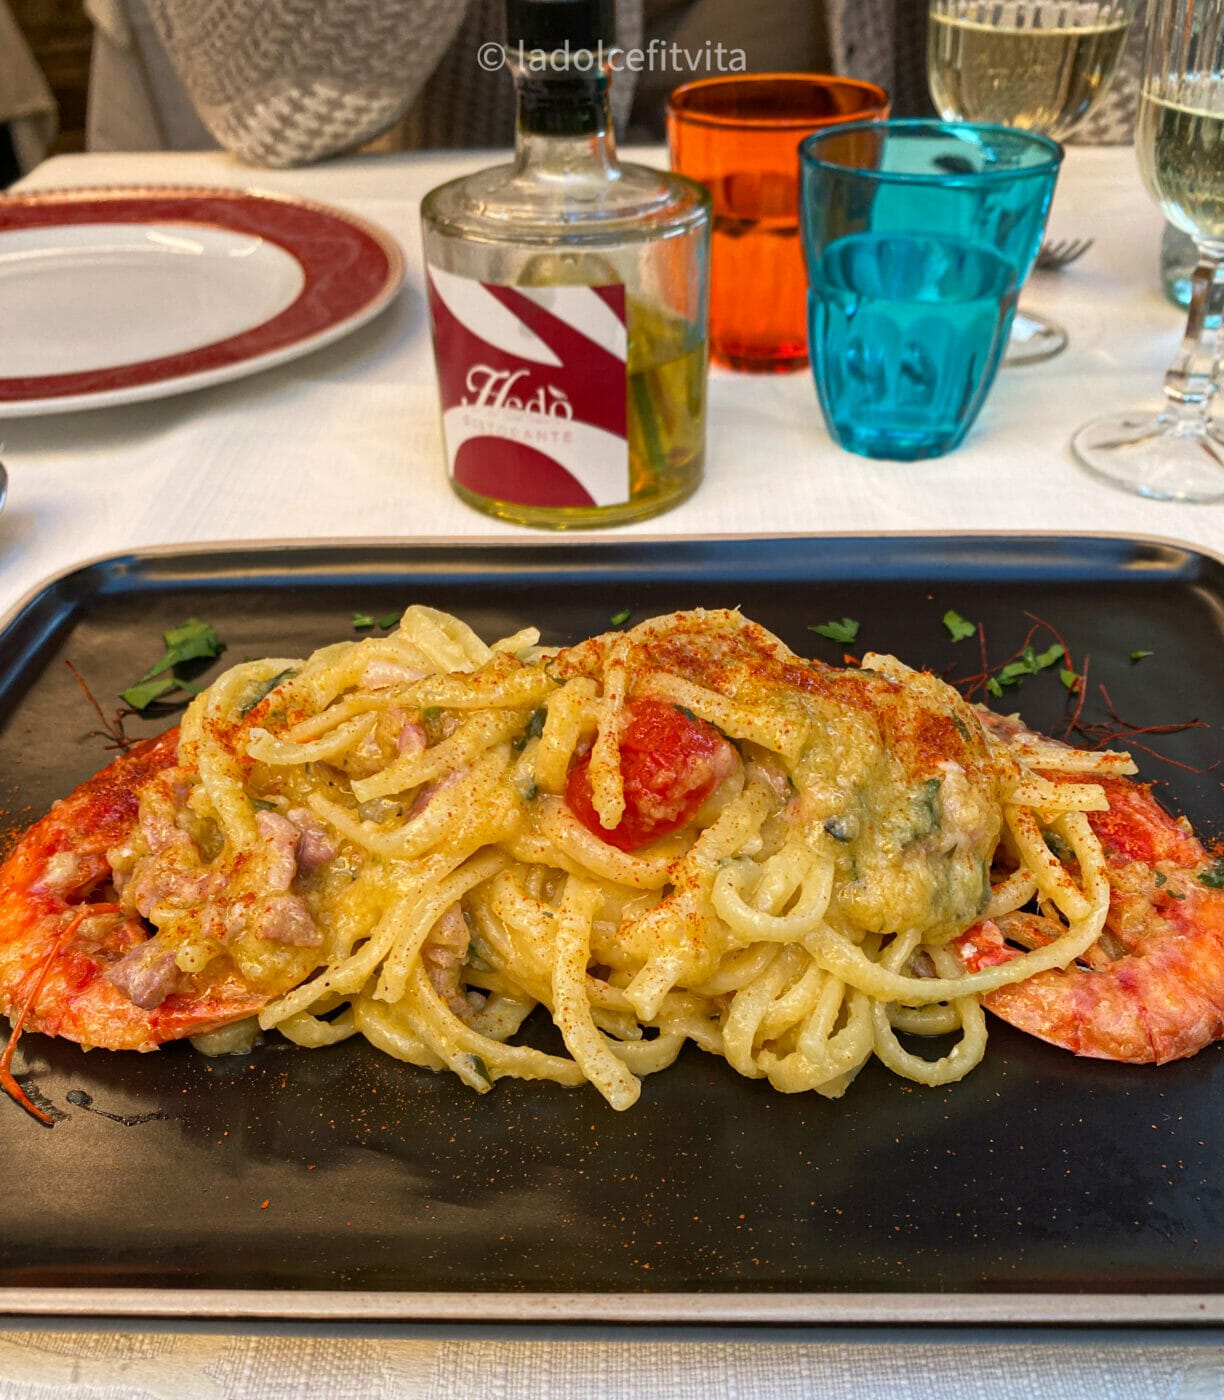 delicious linguine pasta with shrimp